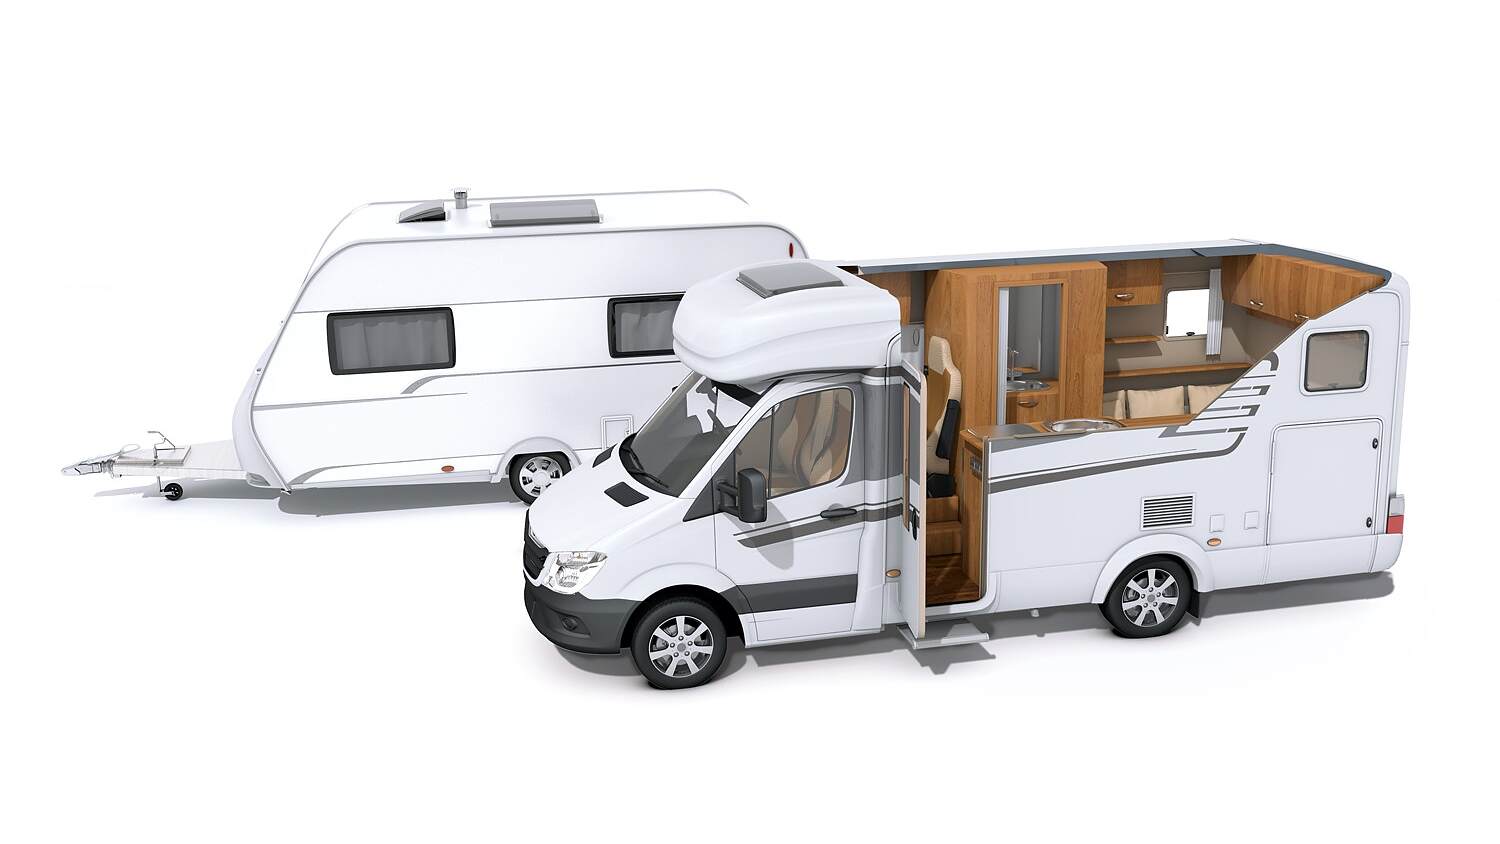 Petite fenêtre caravane ou camping-car ? - Équipement caravaning